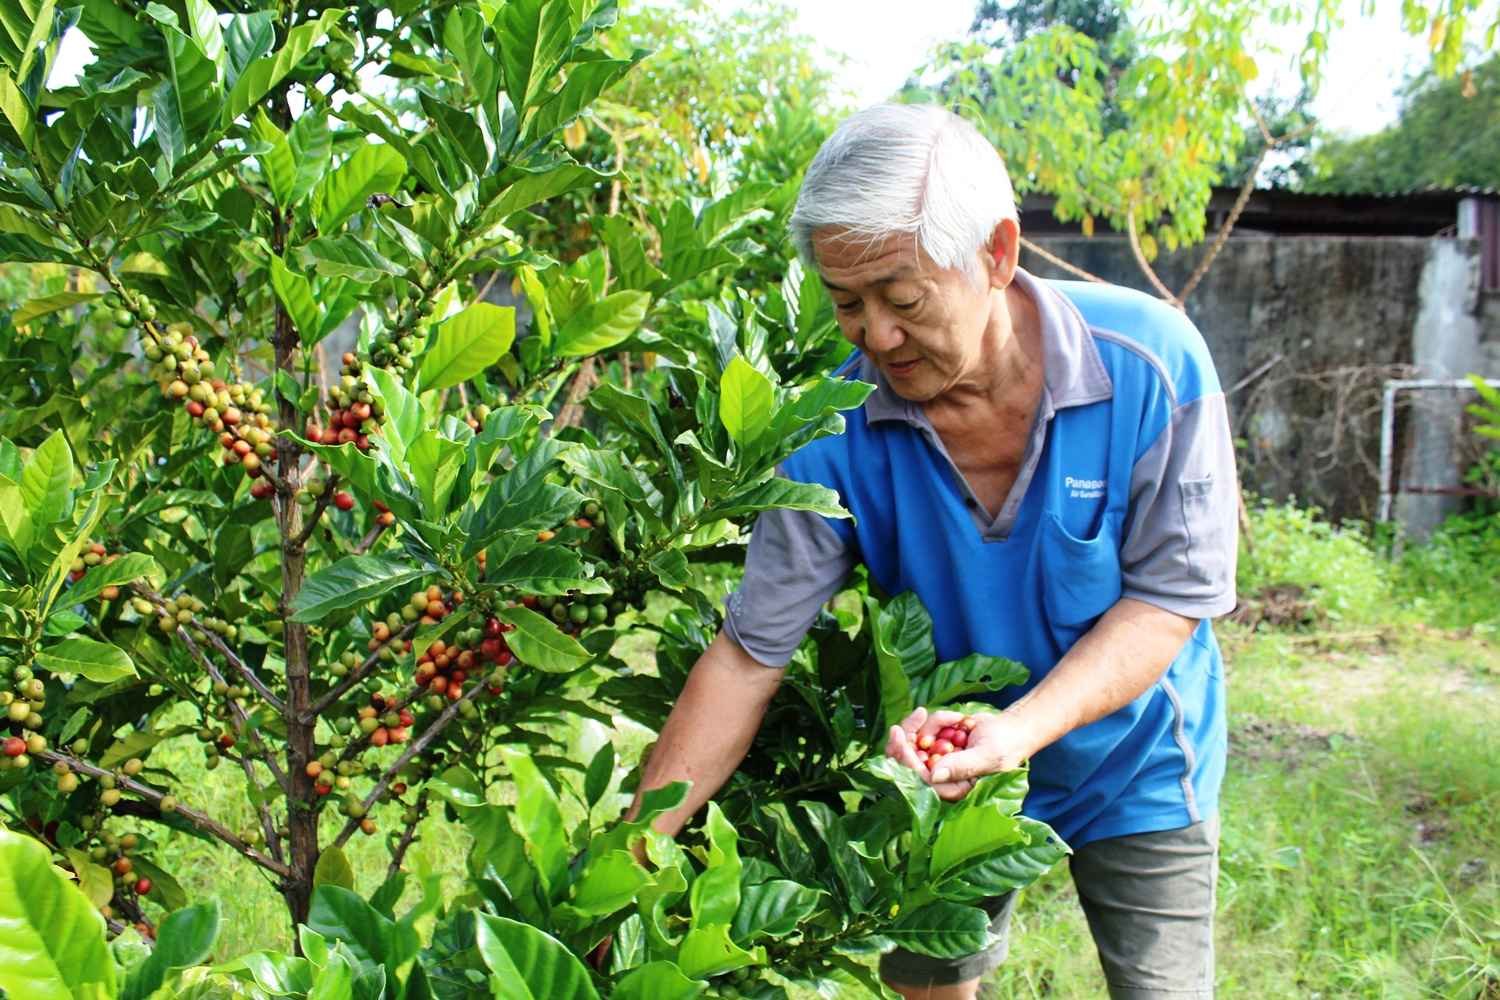 未曾务农的黄平，为推广新咖啡山的一村一品，依然投入咖啡树种植活动，如今已见收成，让其颇感欣慰。